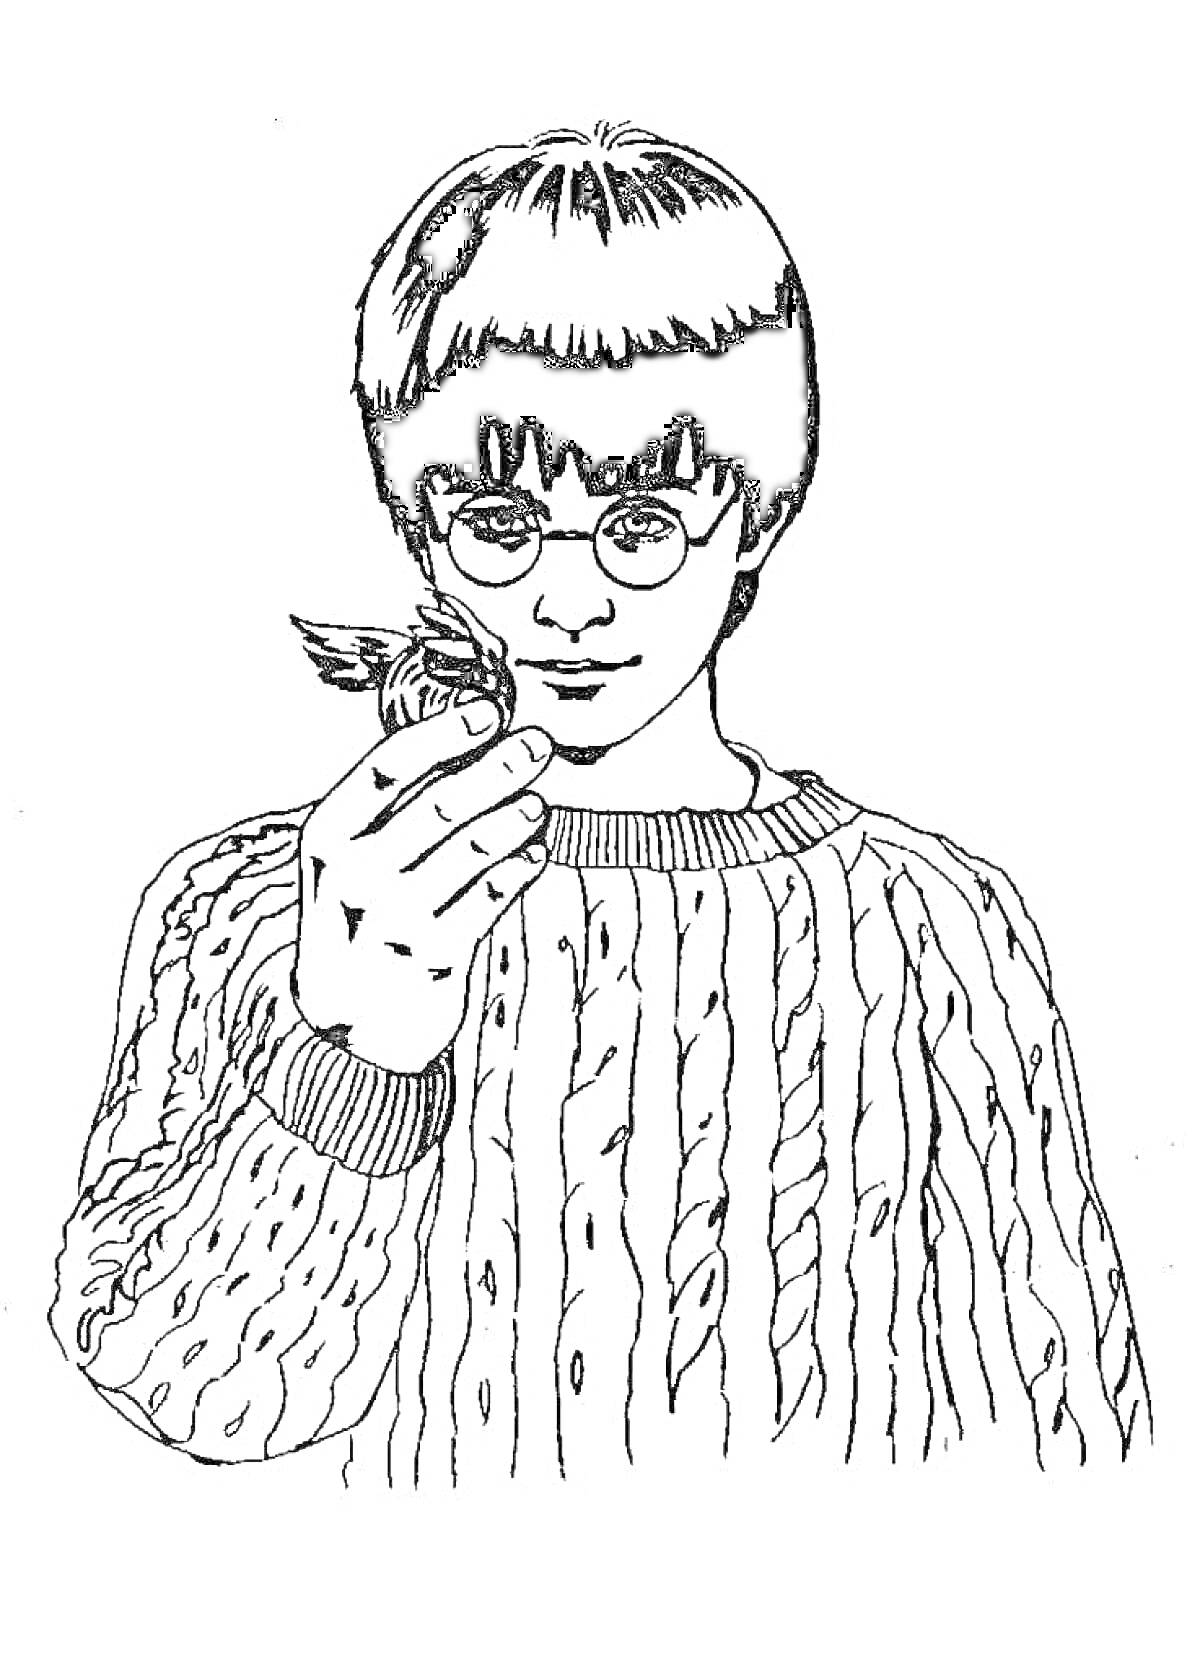 Мальчик в очках в полосатом свитере держит в руках снитч